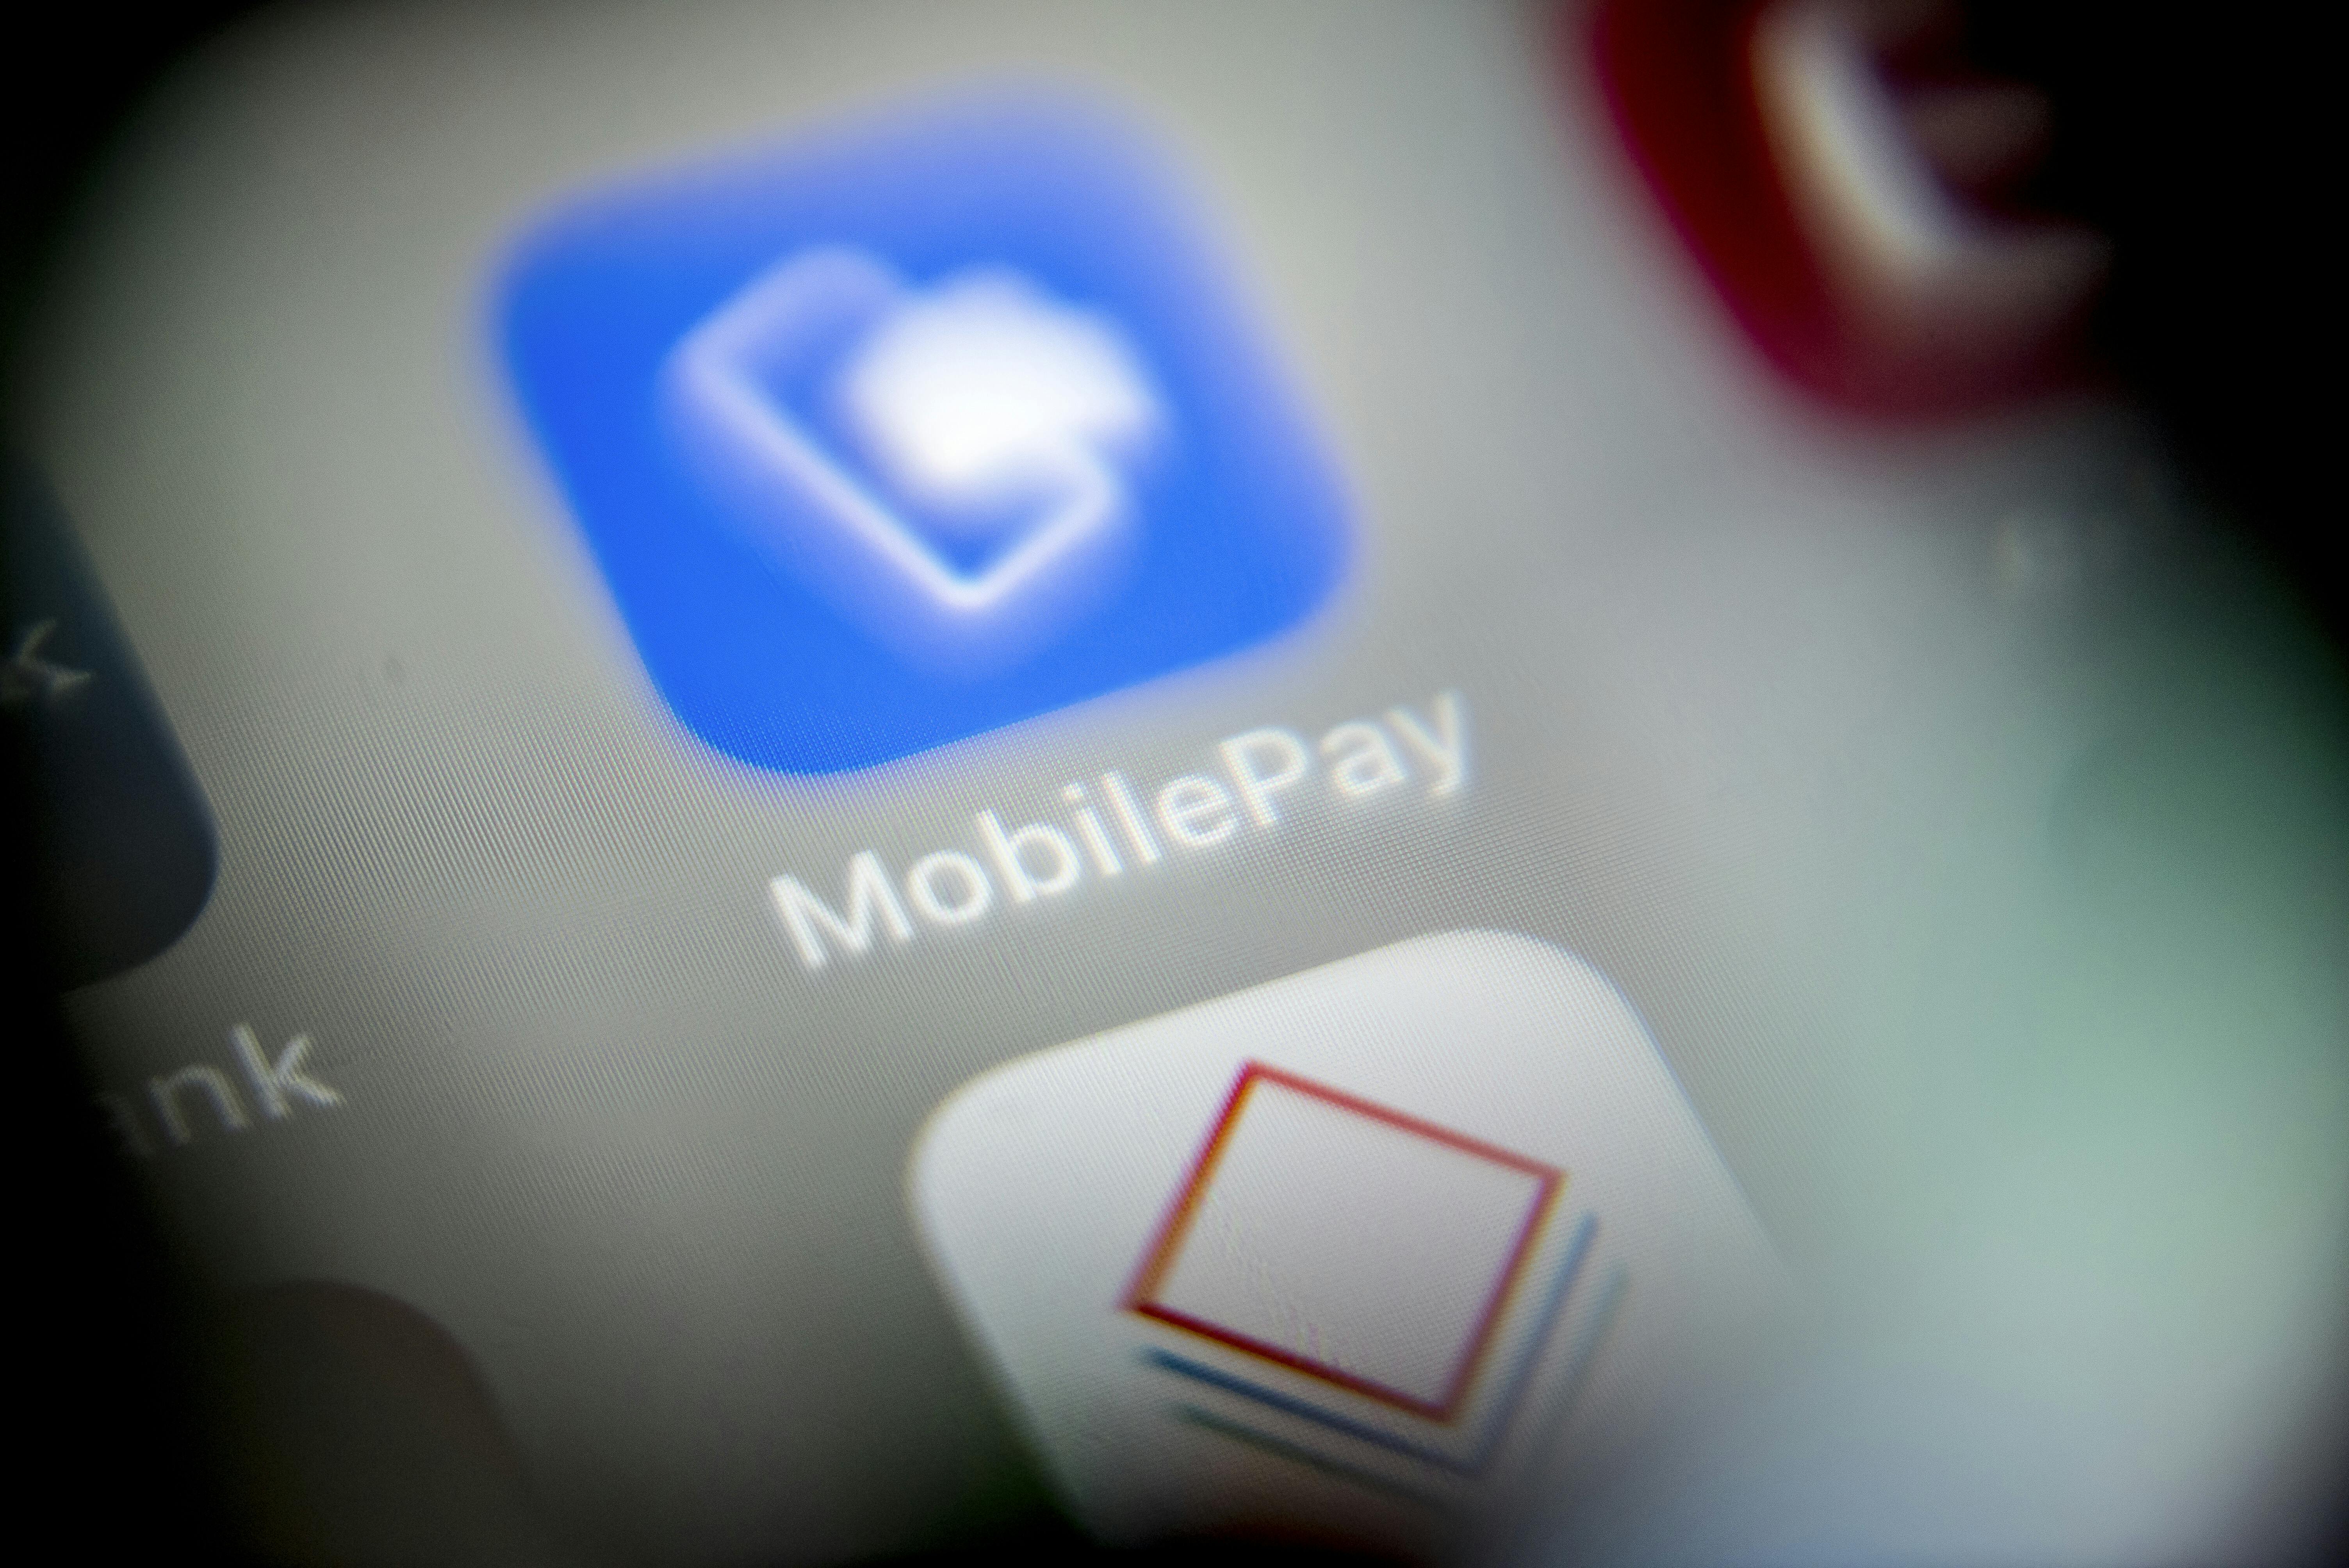 På grund af en teknisk fejl hos en it-leverandør kan visse bankkunder opleve problemer med betalingskort og MobilePay.